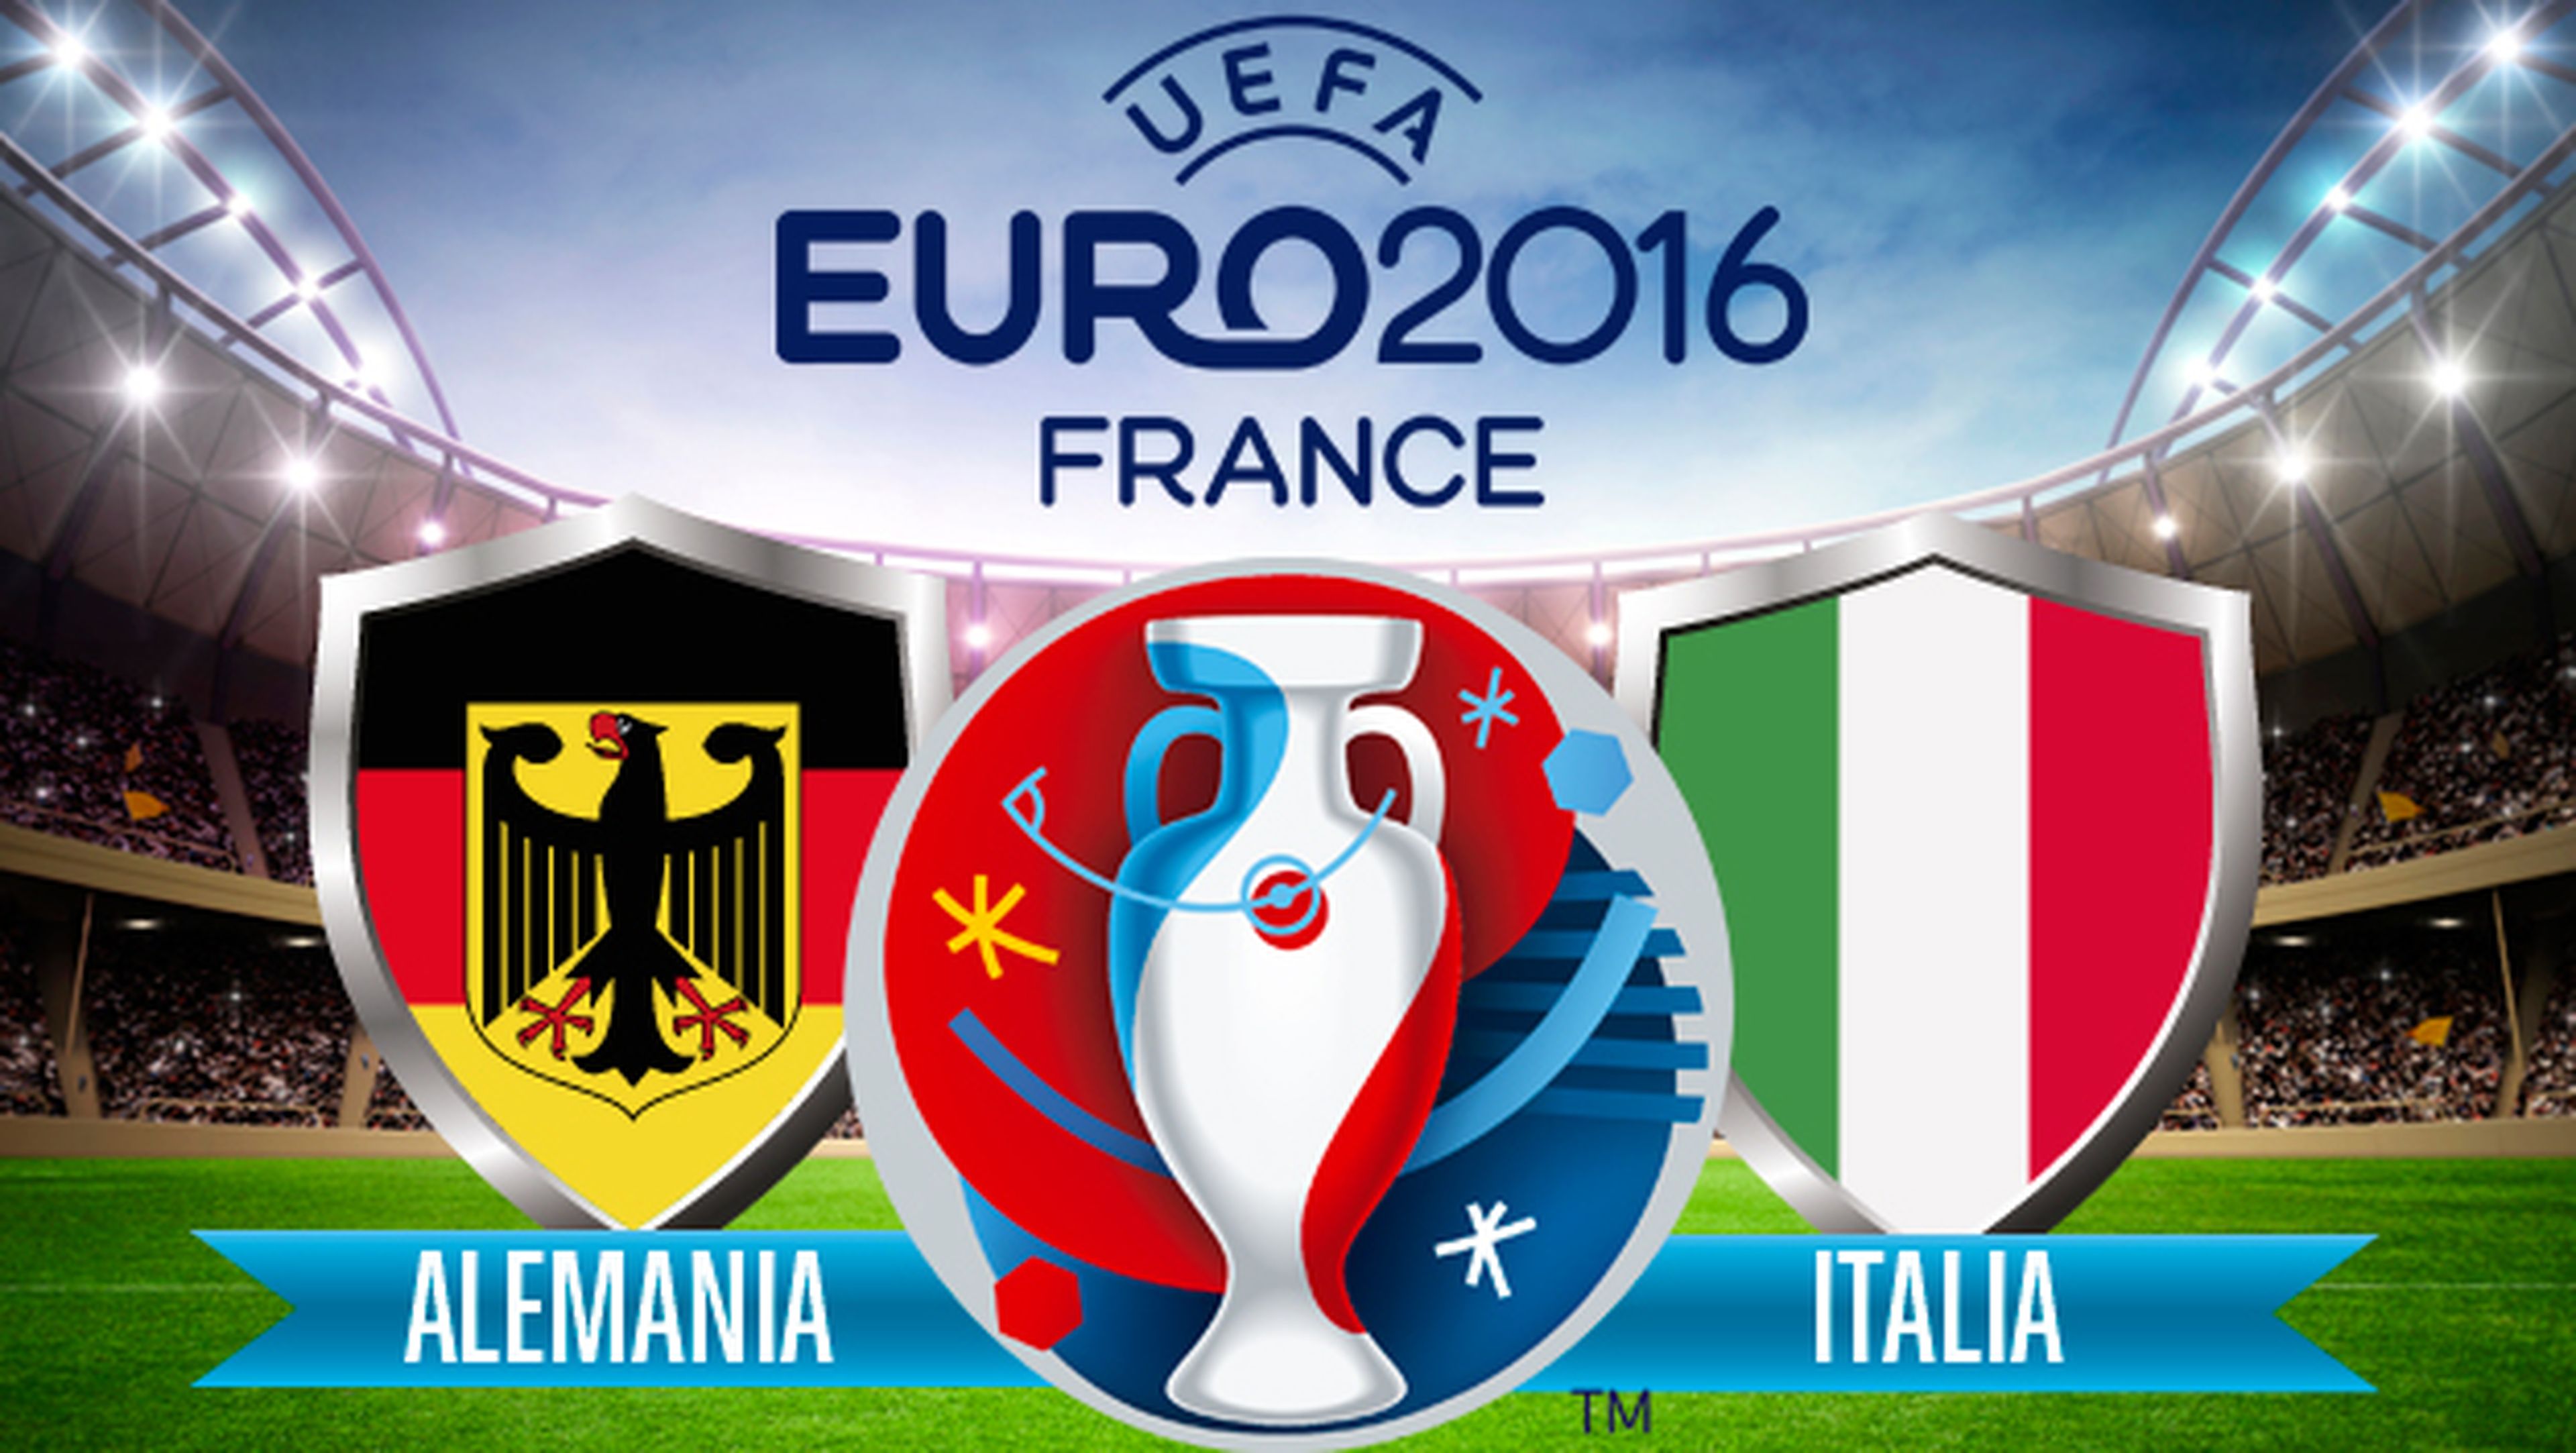 ver online alemania italia eurocopa en directo por internet en streaming